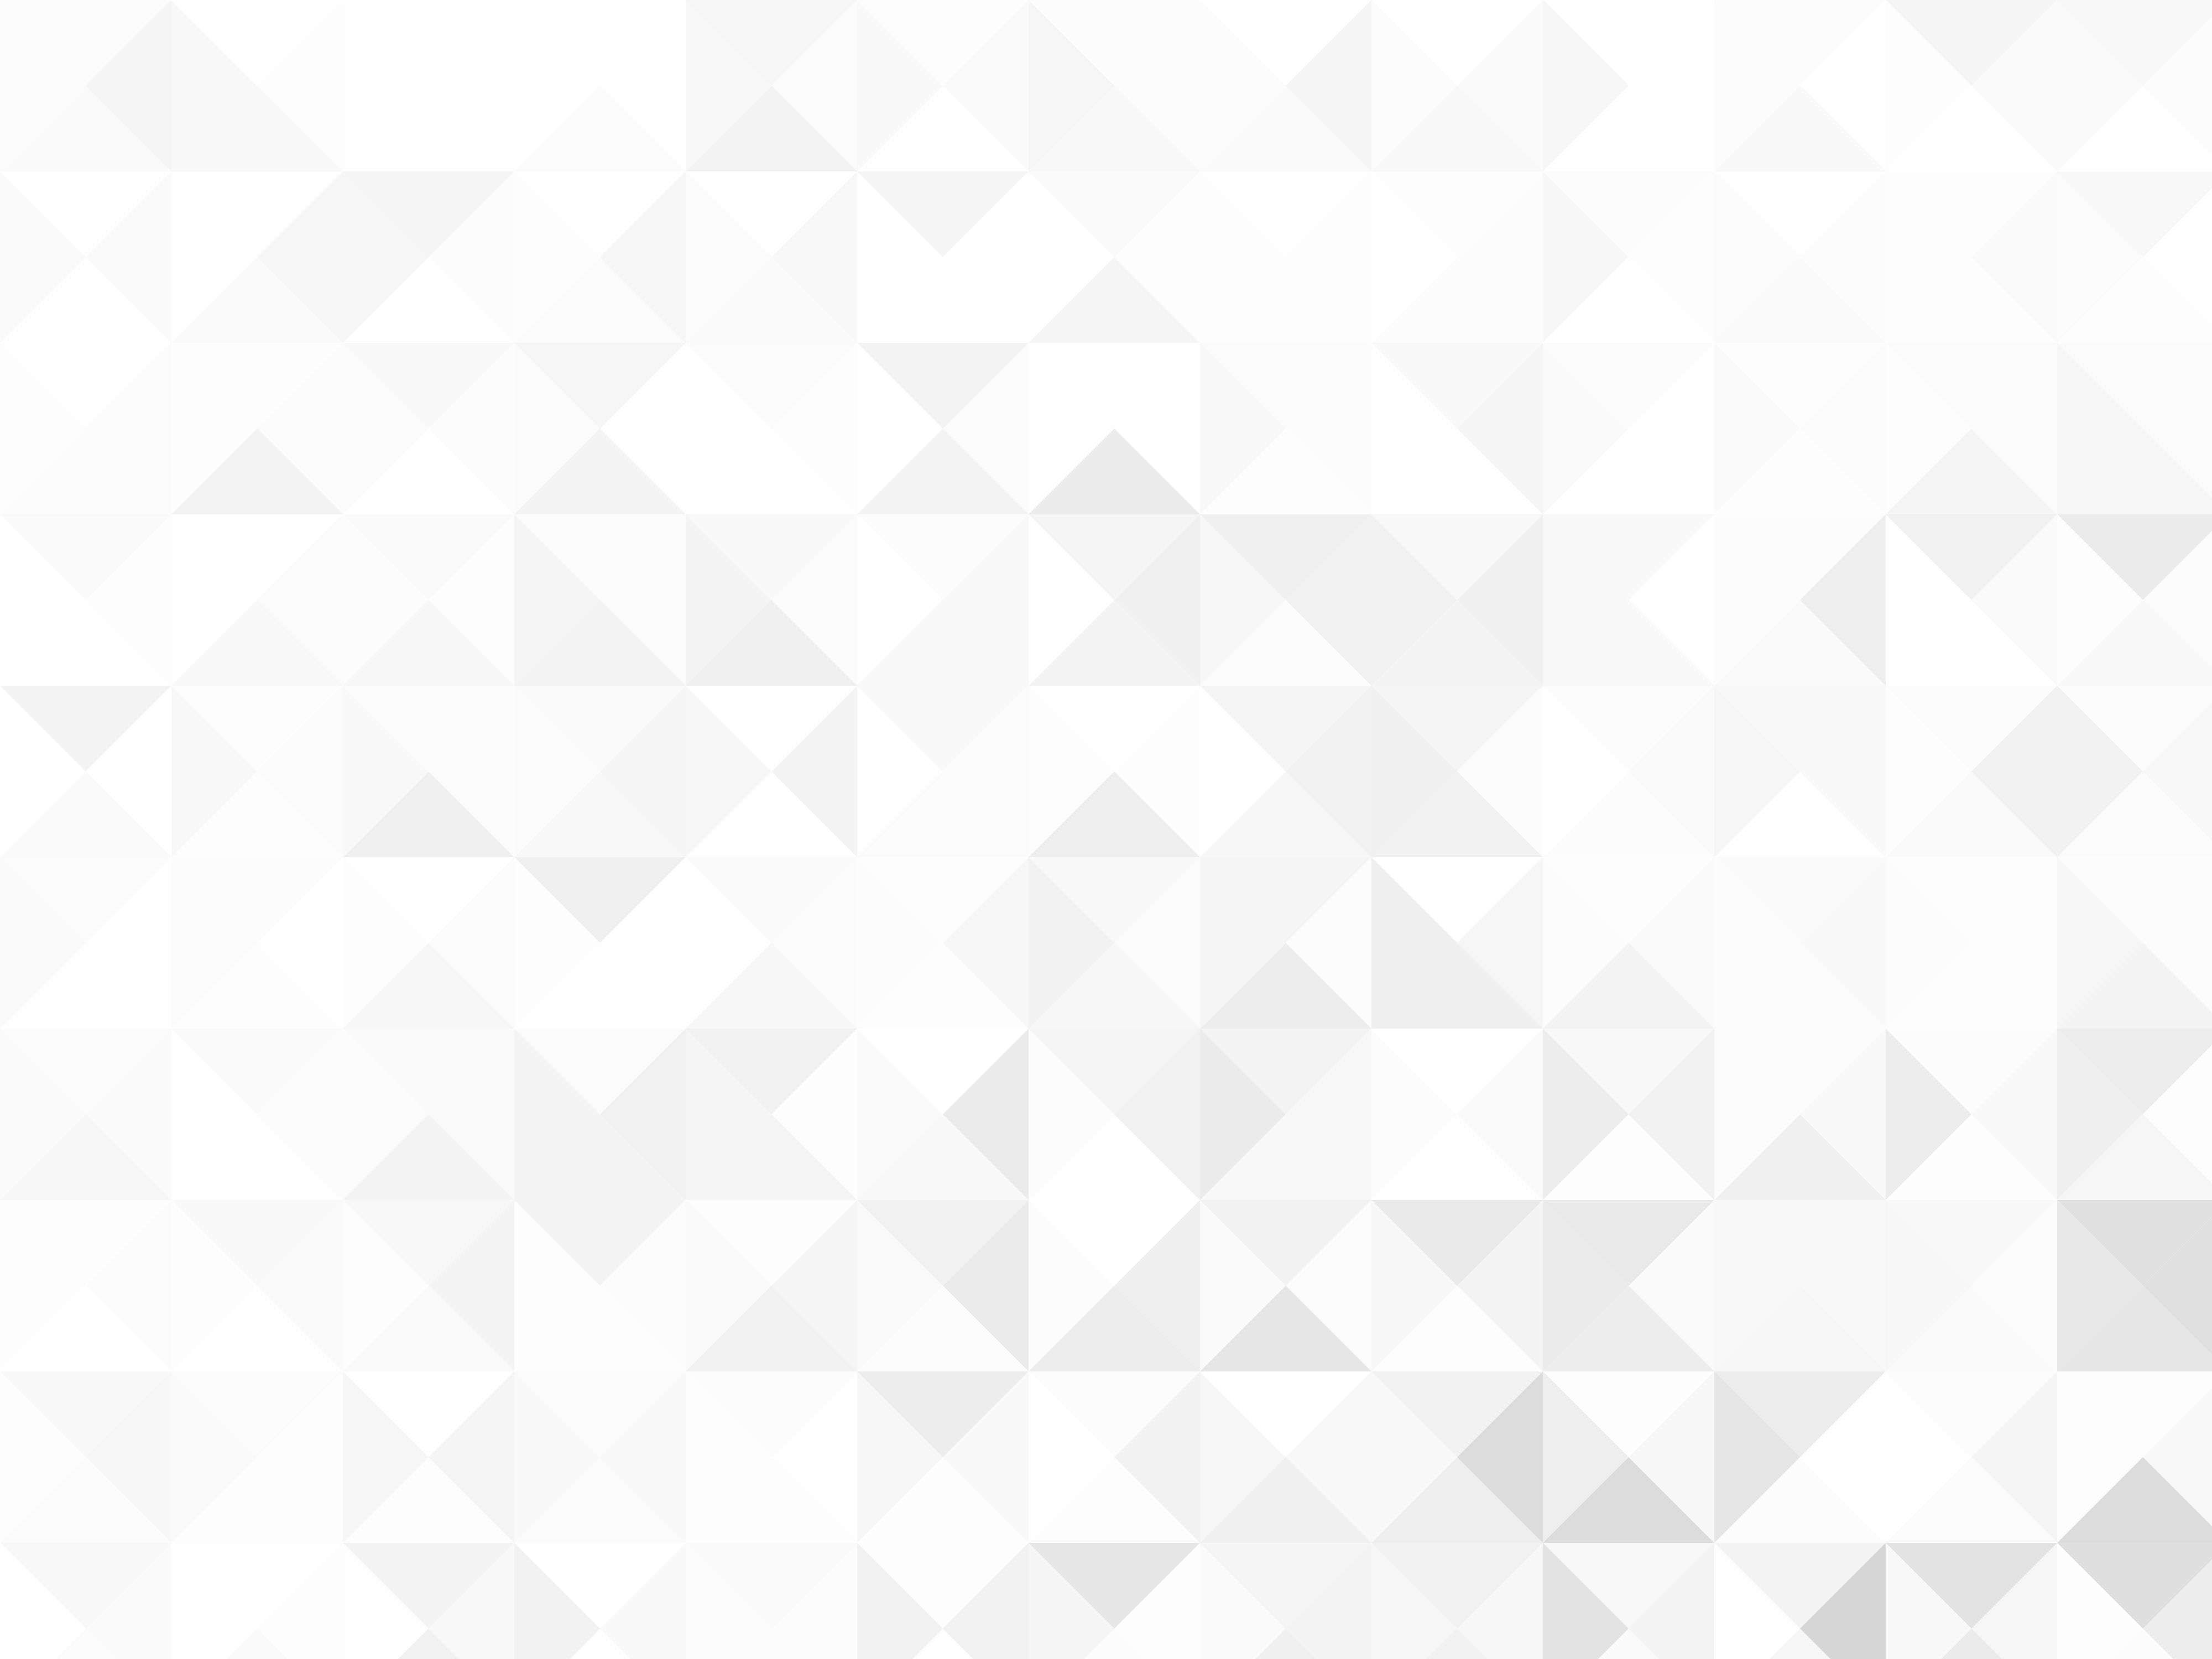 Mẫu nền tam giác trắng đơn giản là một trong những lựa chọn phổ biến để trang trí màn hình. Thiết kế tối giản cùng với sự kết hợp hài hòa của các tam giác trắng sẽ tạo nên một điểm nhấn đẹp mắt và tinh tế. Hãy cùng khám phá chi tiết các mẫu nền tam giác trắng đơn giản qua những hình ảnh độc đáo.